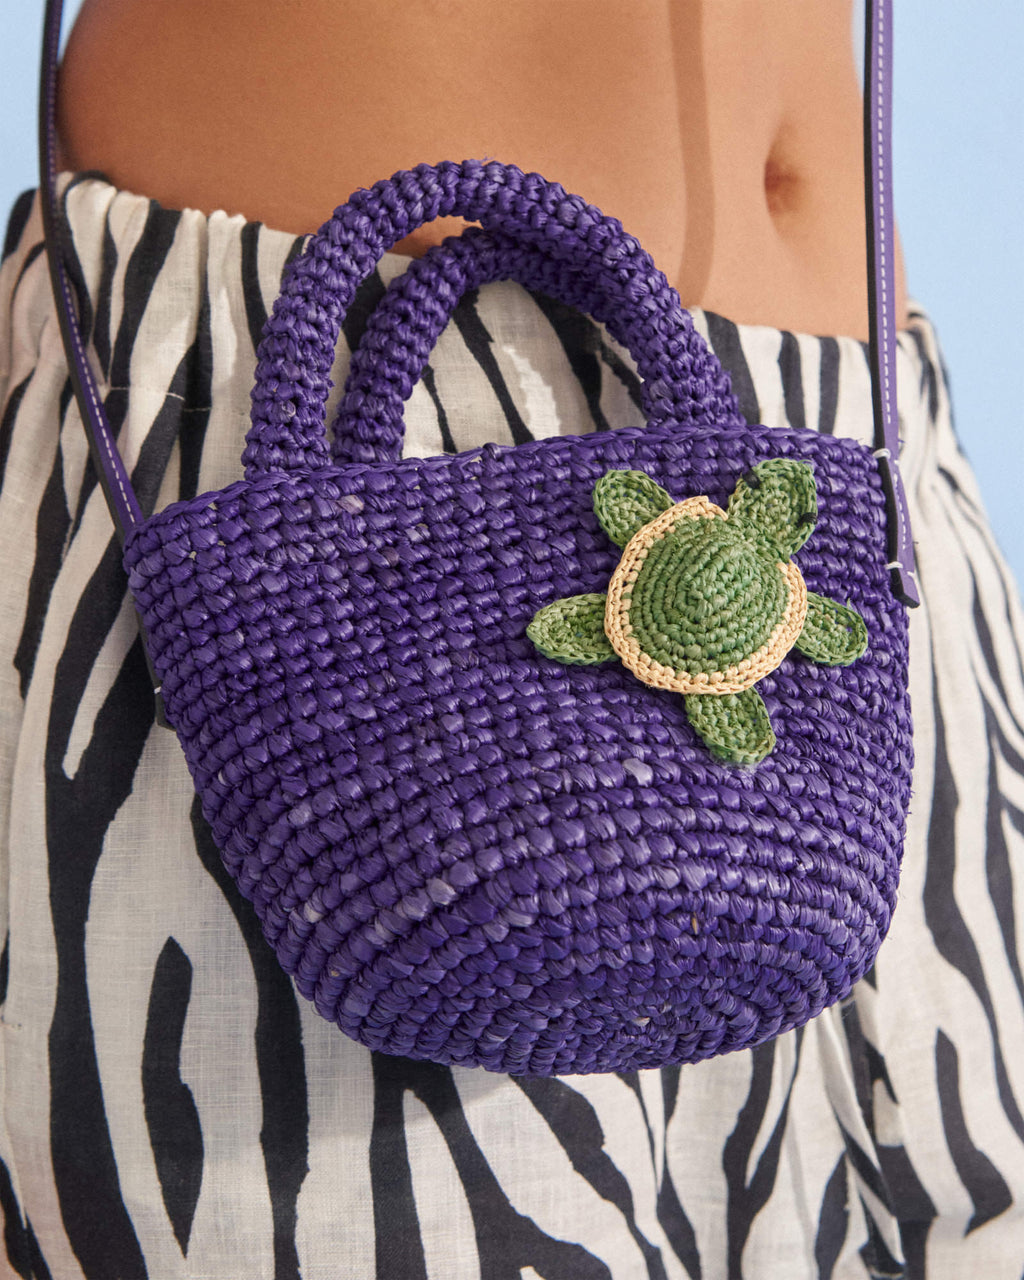 Raffia & Leather Summer Bag Mini - Summer Purple with Turtle